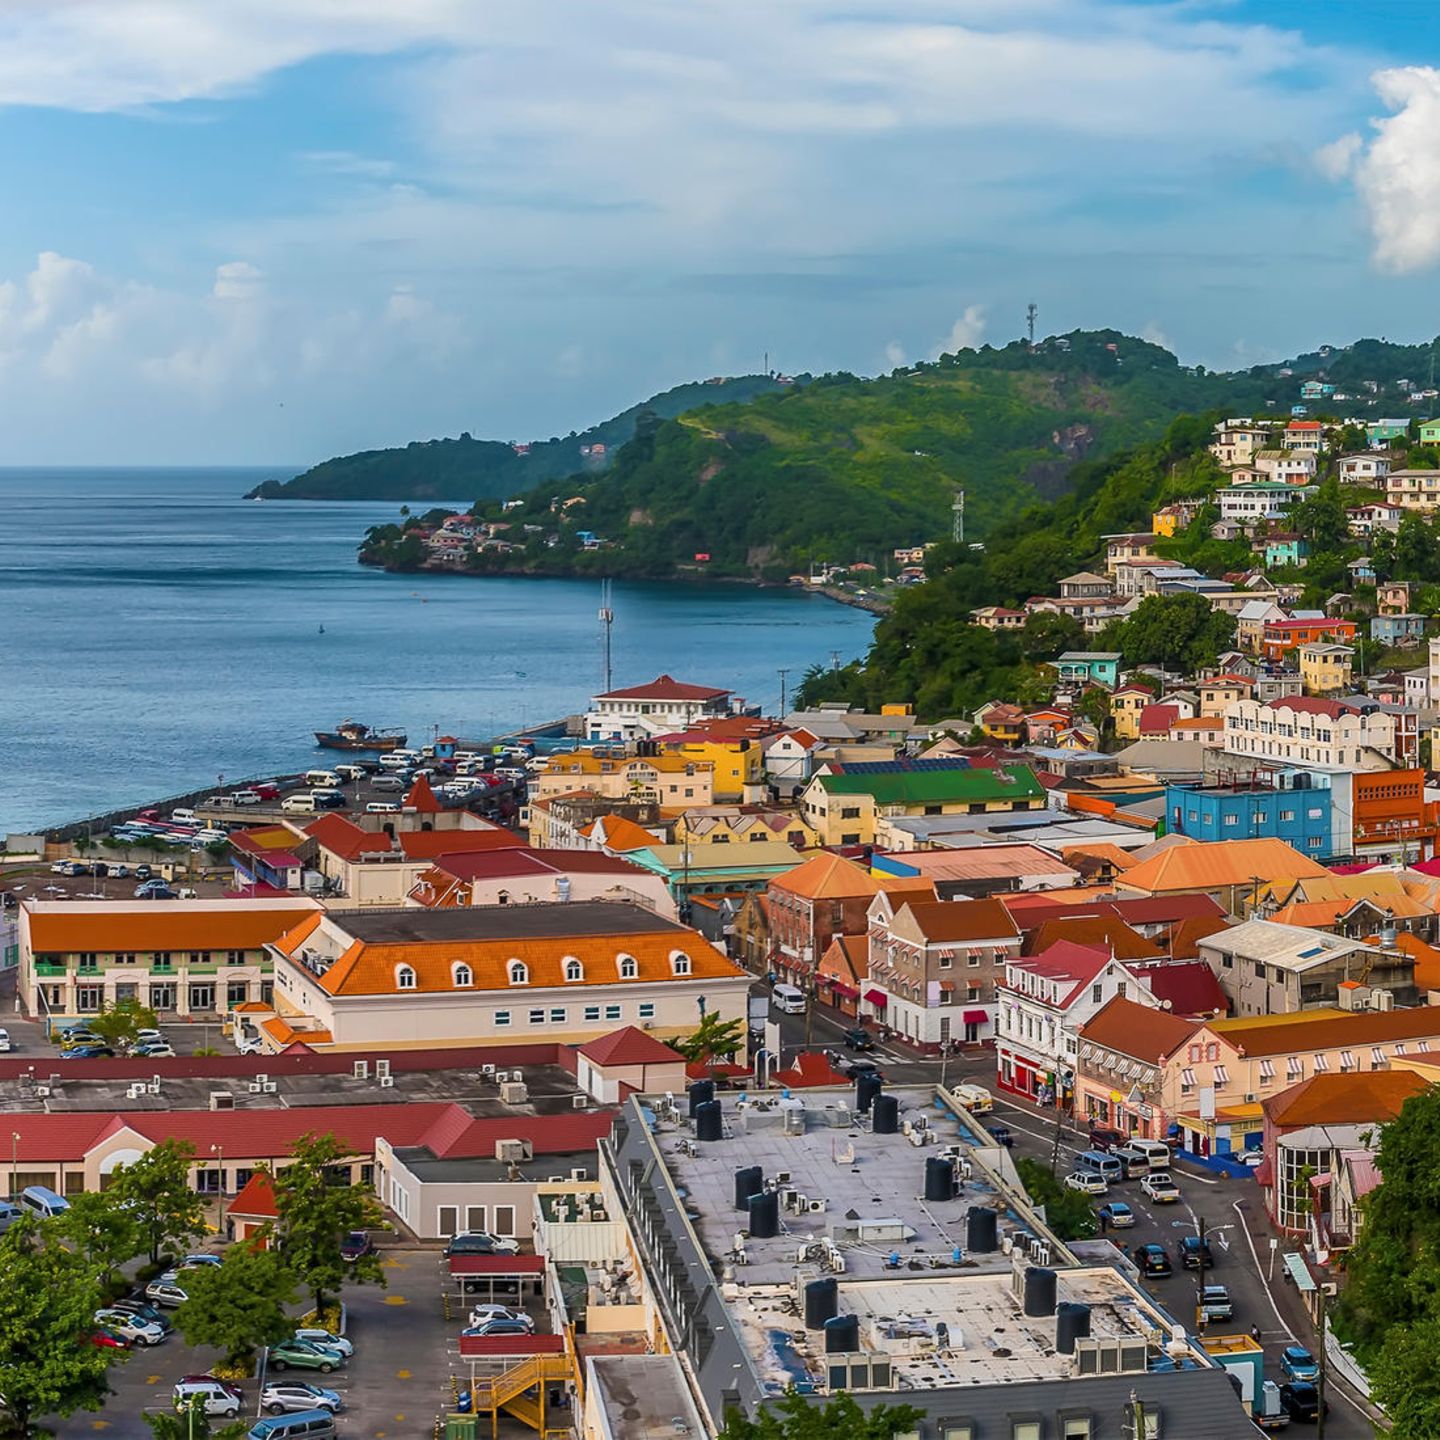 St. George in Grenada